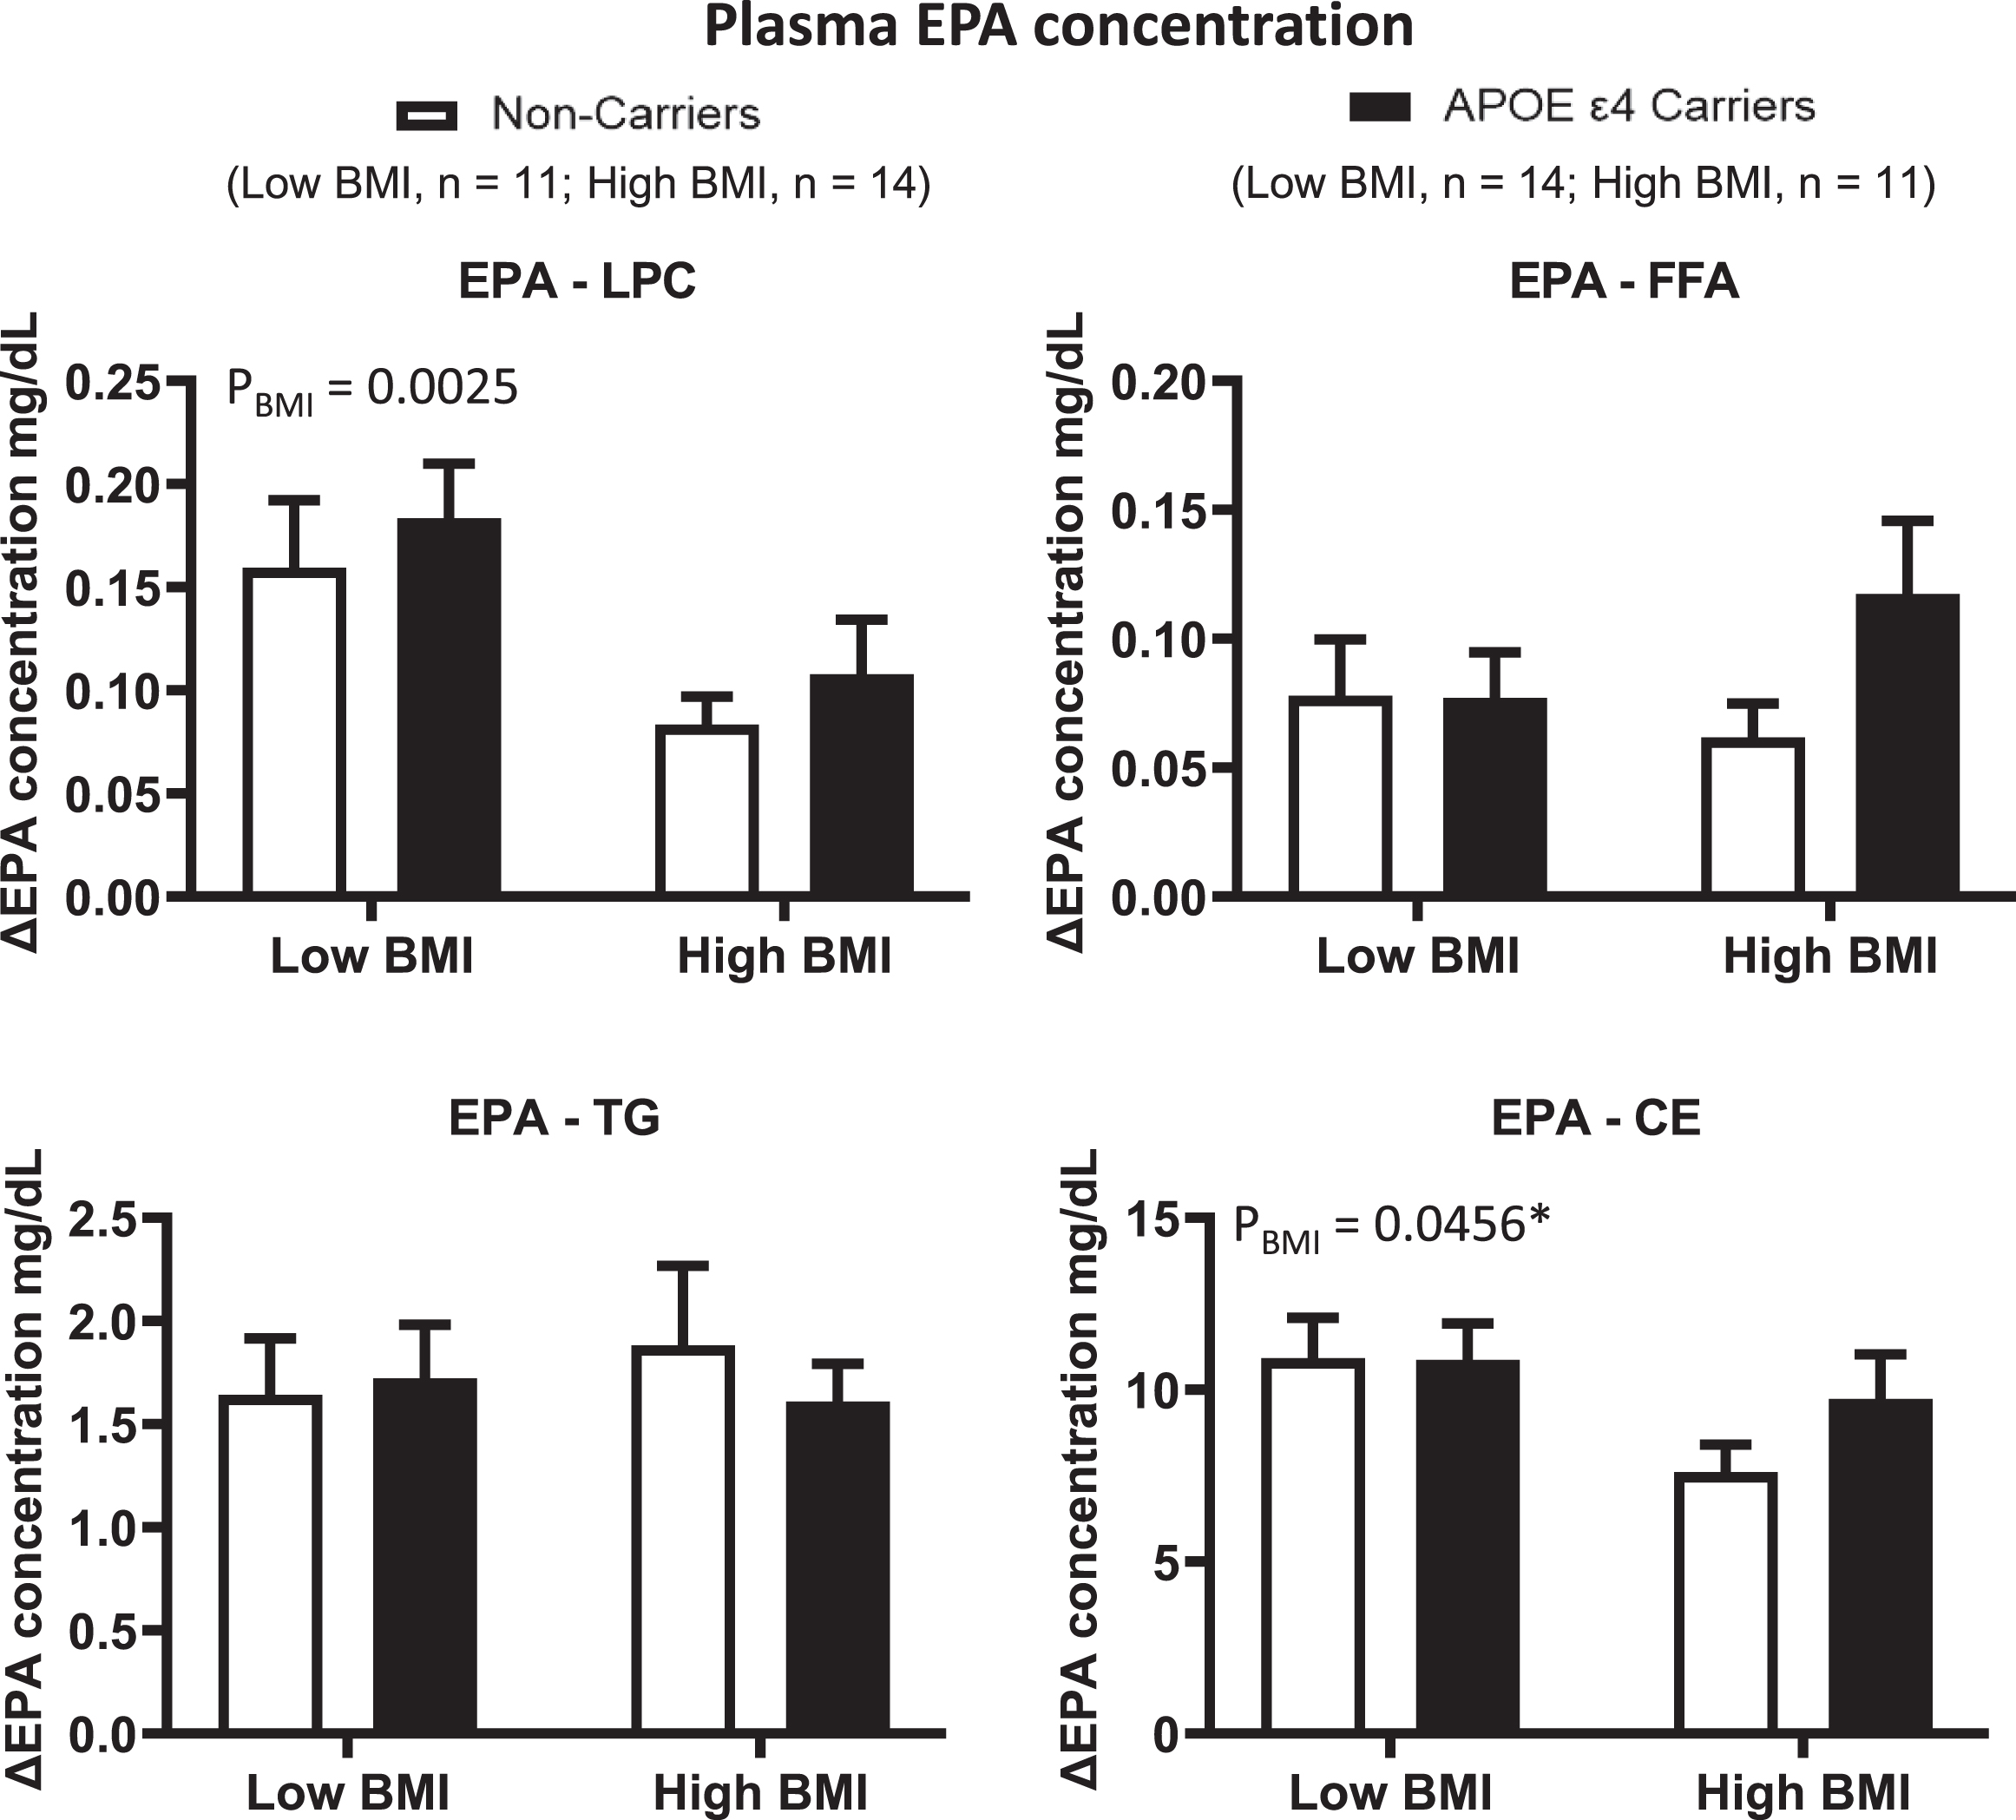 ΔEPA concentrations were compared in different plasma lipid compartments based on the APOE4 genotype and BMI. Low BMI: n = 11 non-carriers; n = 14 APOE4 carriers. High BMI: n = 14 non-carriers; n = 11 APOE4 carriers. LPC: There was a BMI effect where ΔEPA was lower in the high BMI group than in the low BMI group. FFA: There is no BMI nor genotype effect. TG: There is no genotype nor BMI effect. CE: There was a BMI effect where ΔEPA was lower in the high BMI group than in the low BMI group. There is no genotype effect. Data are presented as the mean±SEM. The Mann–Whitney test was used to compare ΔEPA medians in TG. 2-way ANOVA was used to compare ΔEPA means in CE. APOE4 –Epsilon 4 allele of the apolipoprotein E gene; BMI –Body mass index; CE –Cholesteryl ester; EPA –Eicosapentaenoic acid; FFA –Free fatty acid; LPC –Lysophosphatidylcholine; TG –Triglyceride.